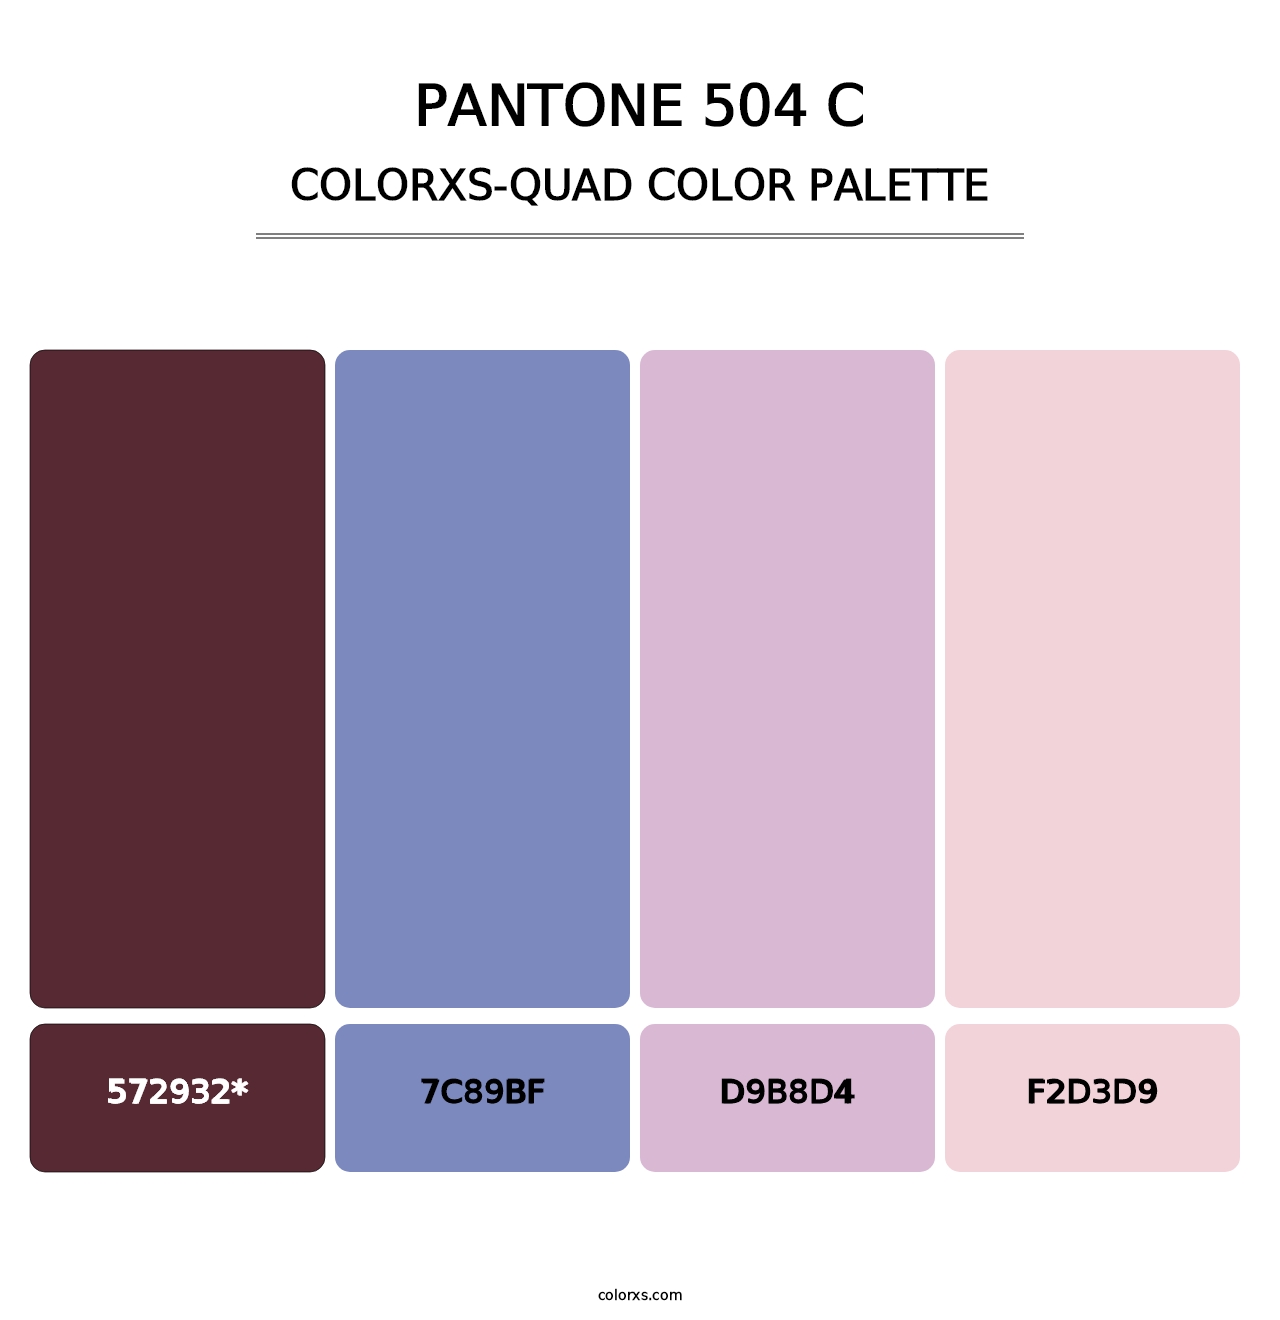 PANTONE 504 C - Colorxs Quad Palette